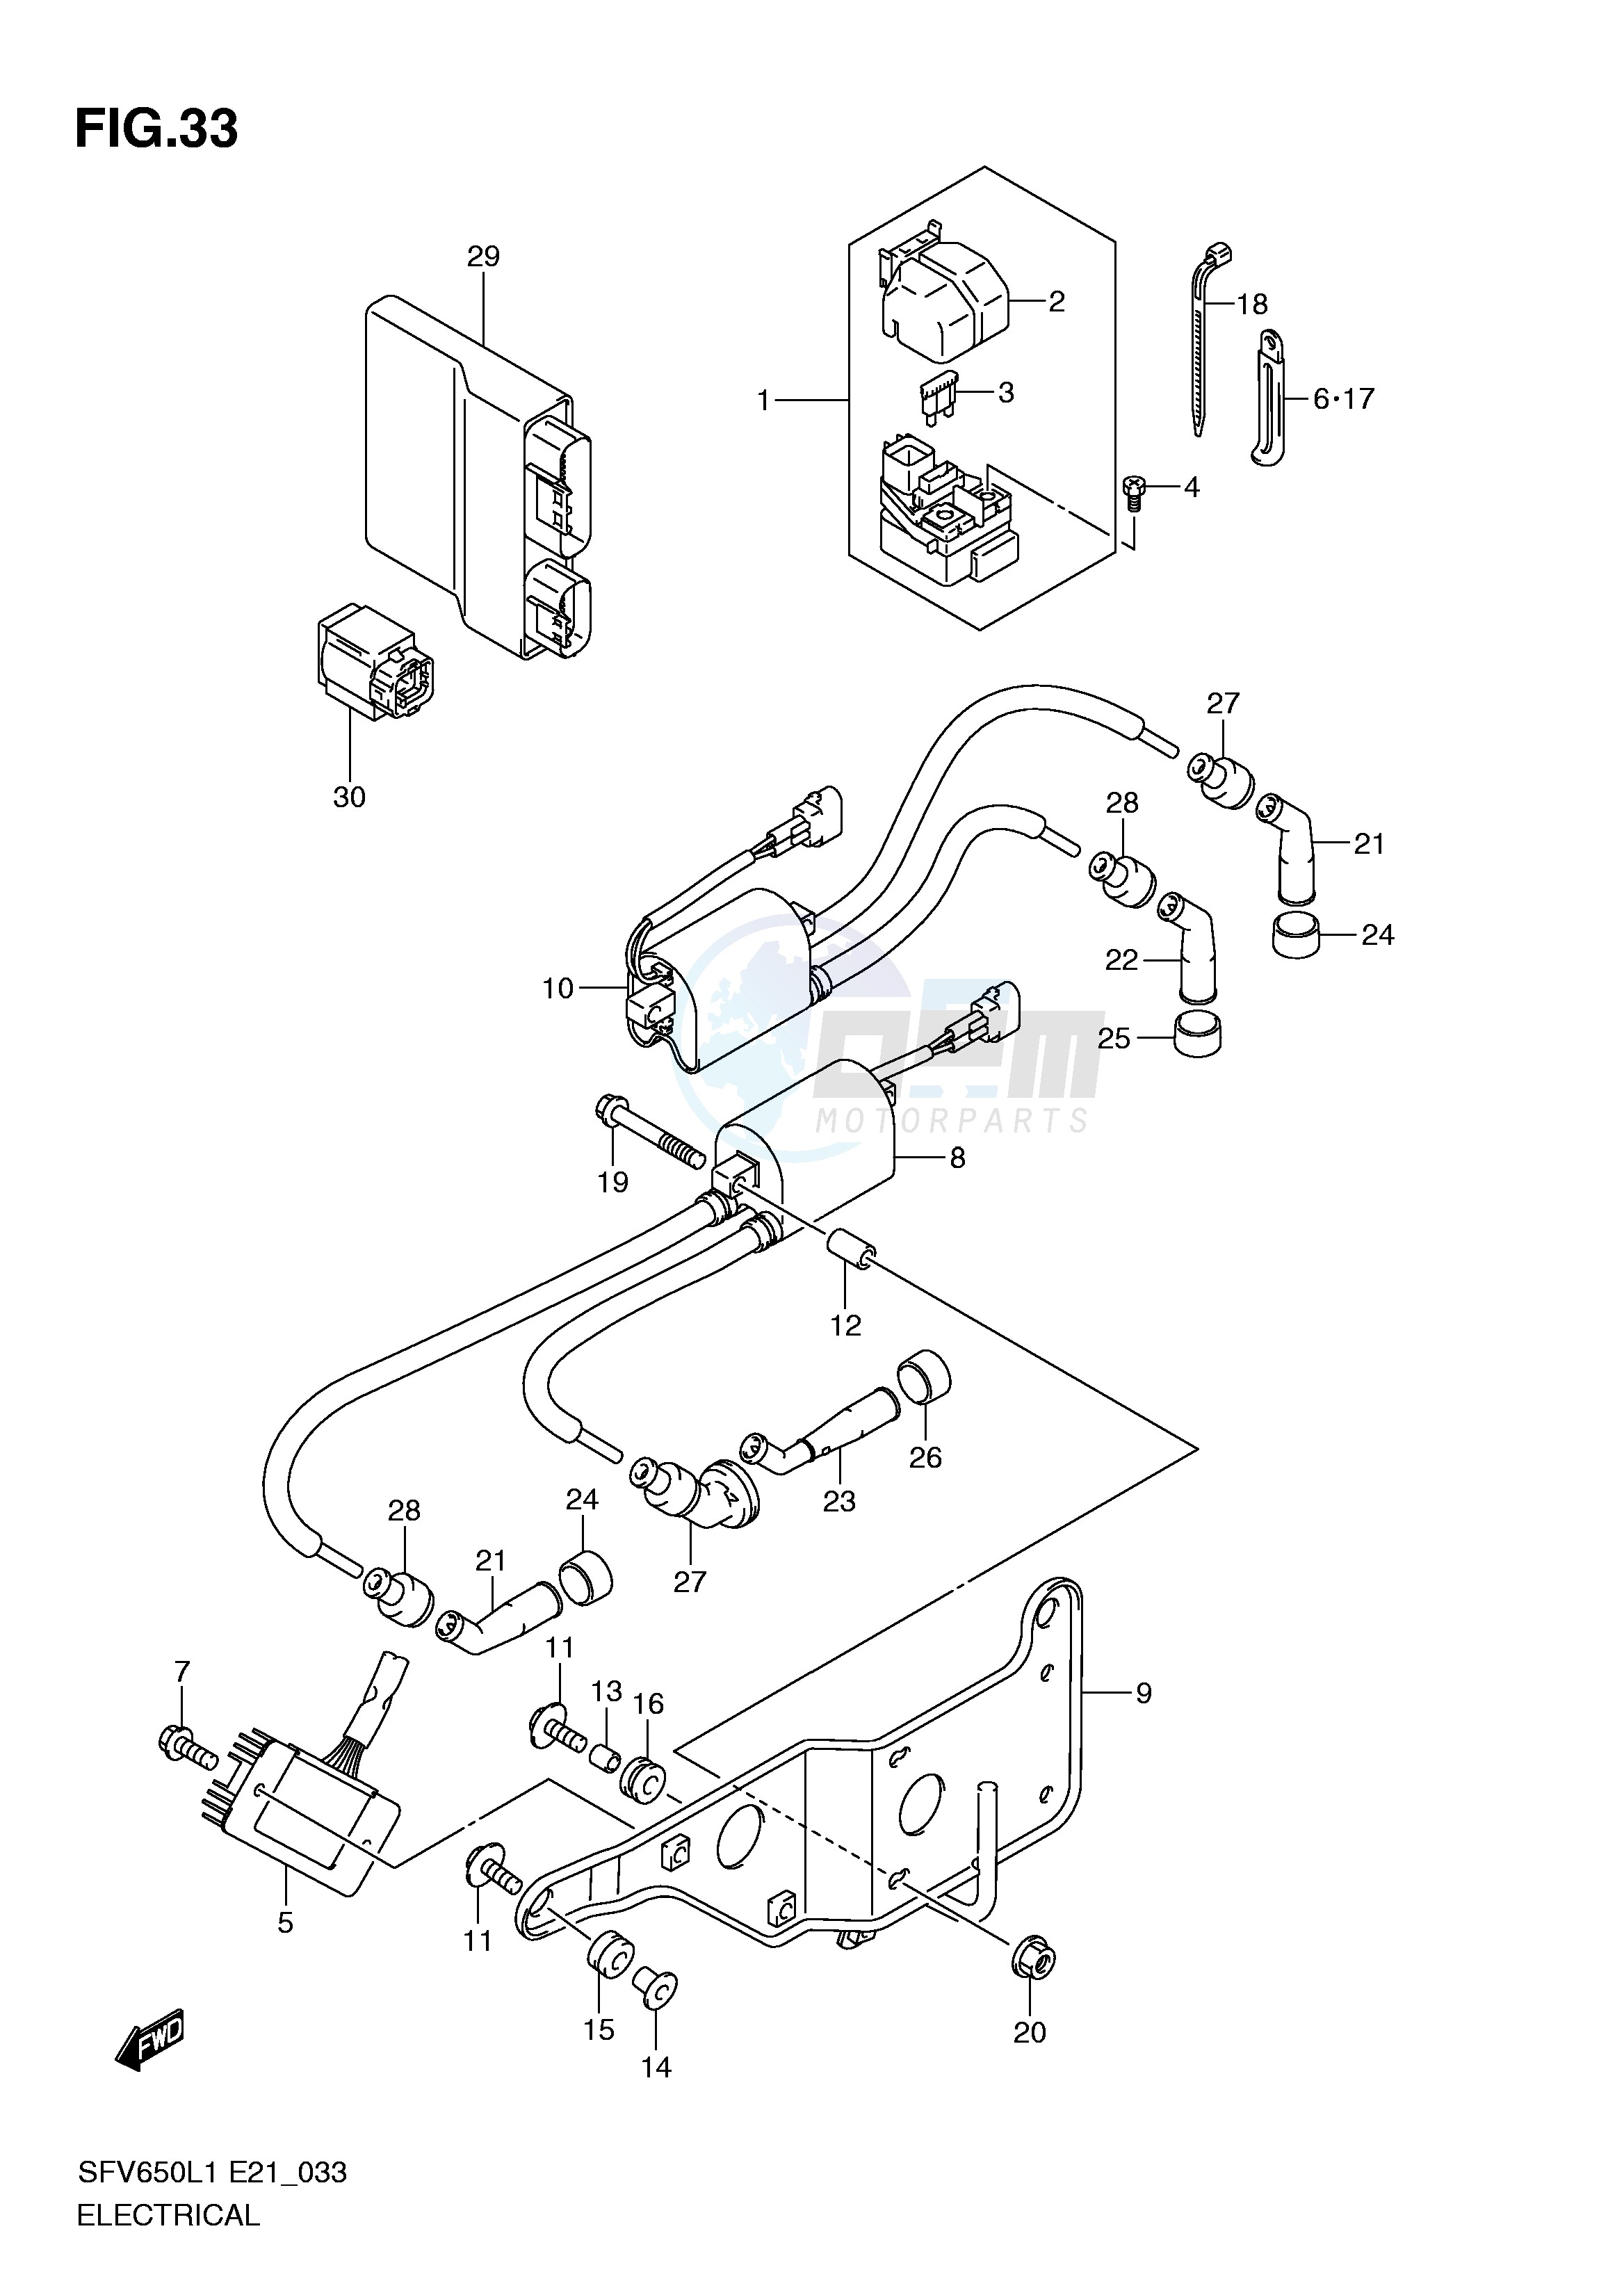 ELECTRICAL (SFV650AL1 E21) blueprint